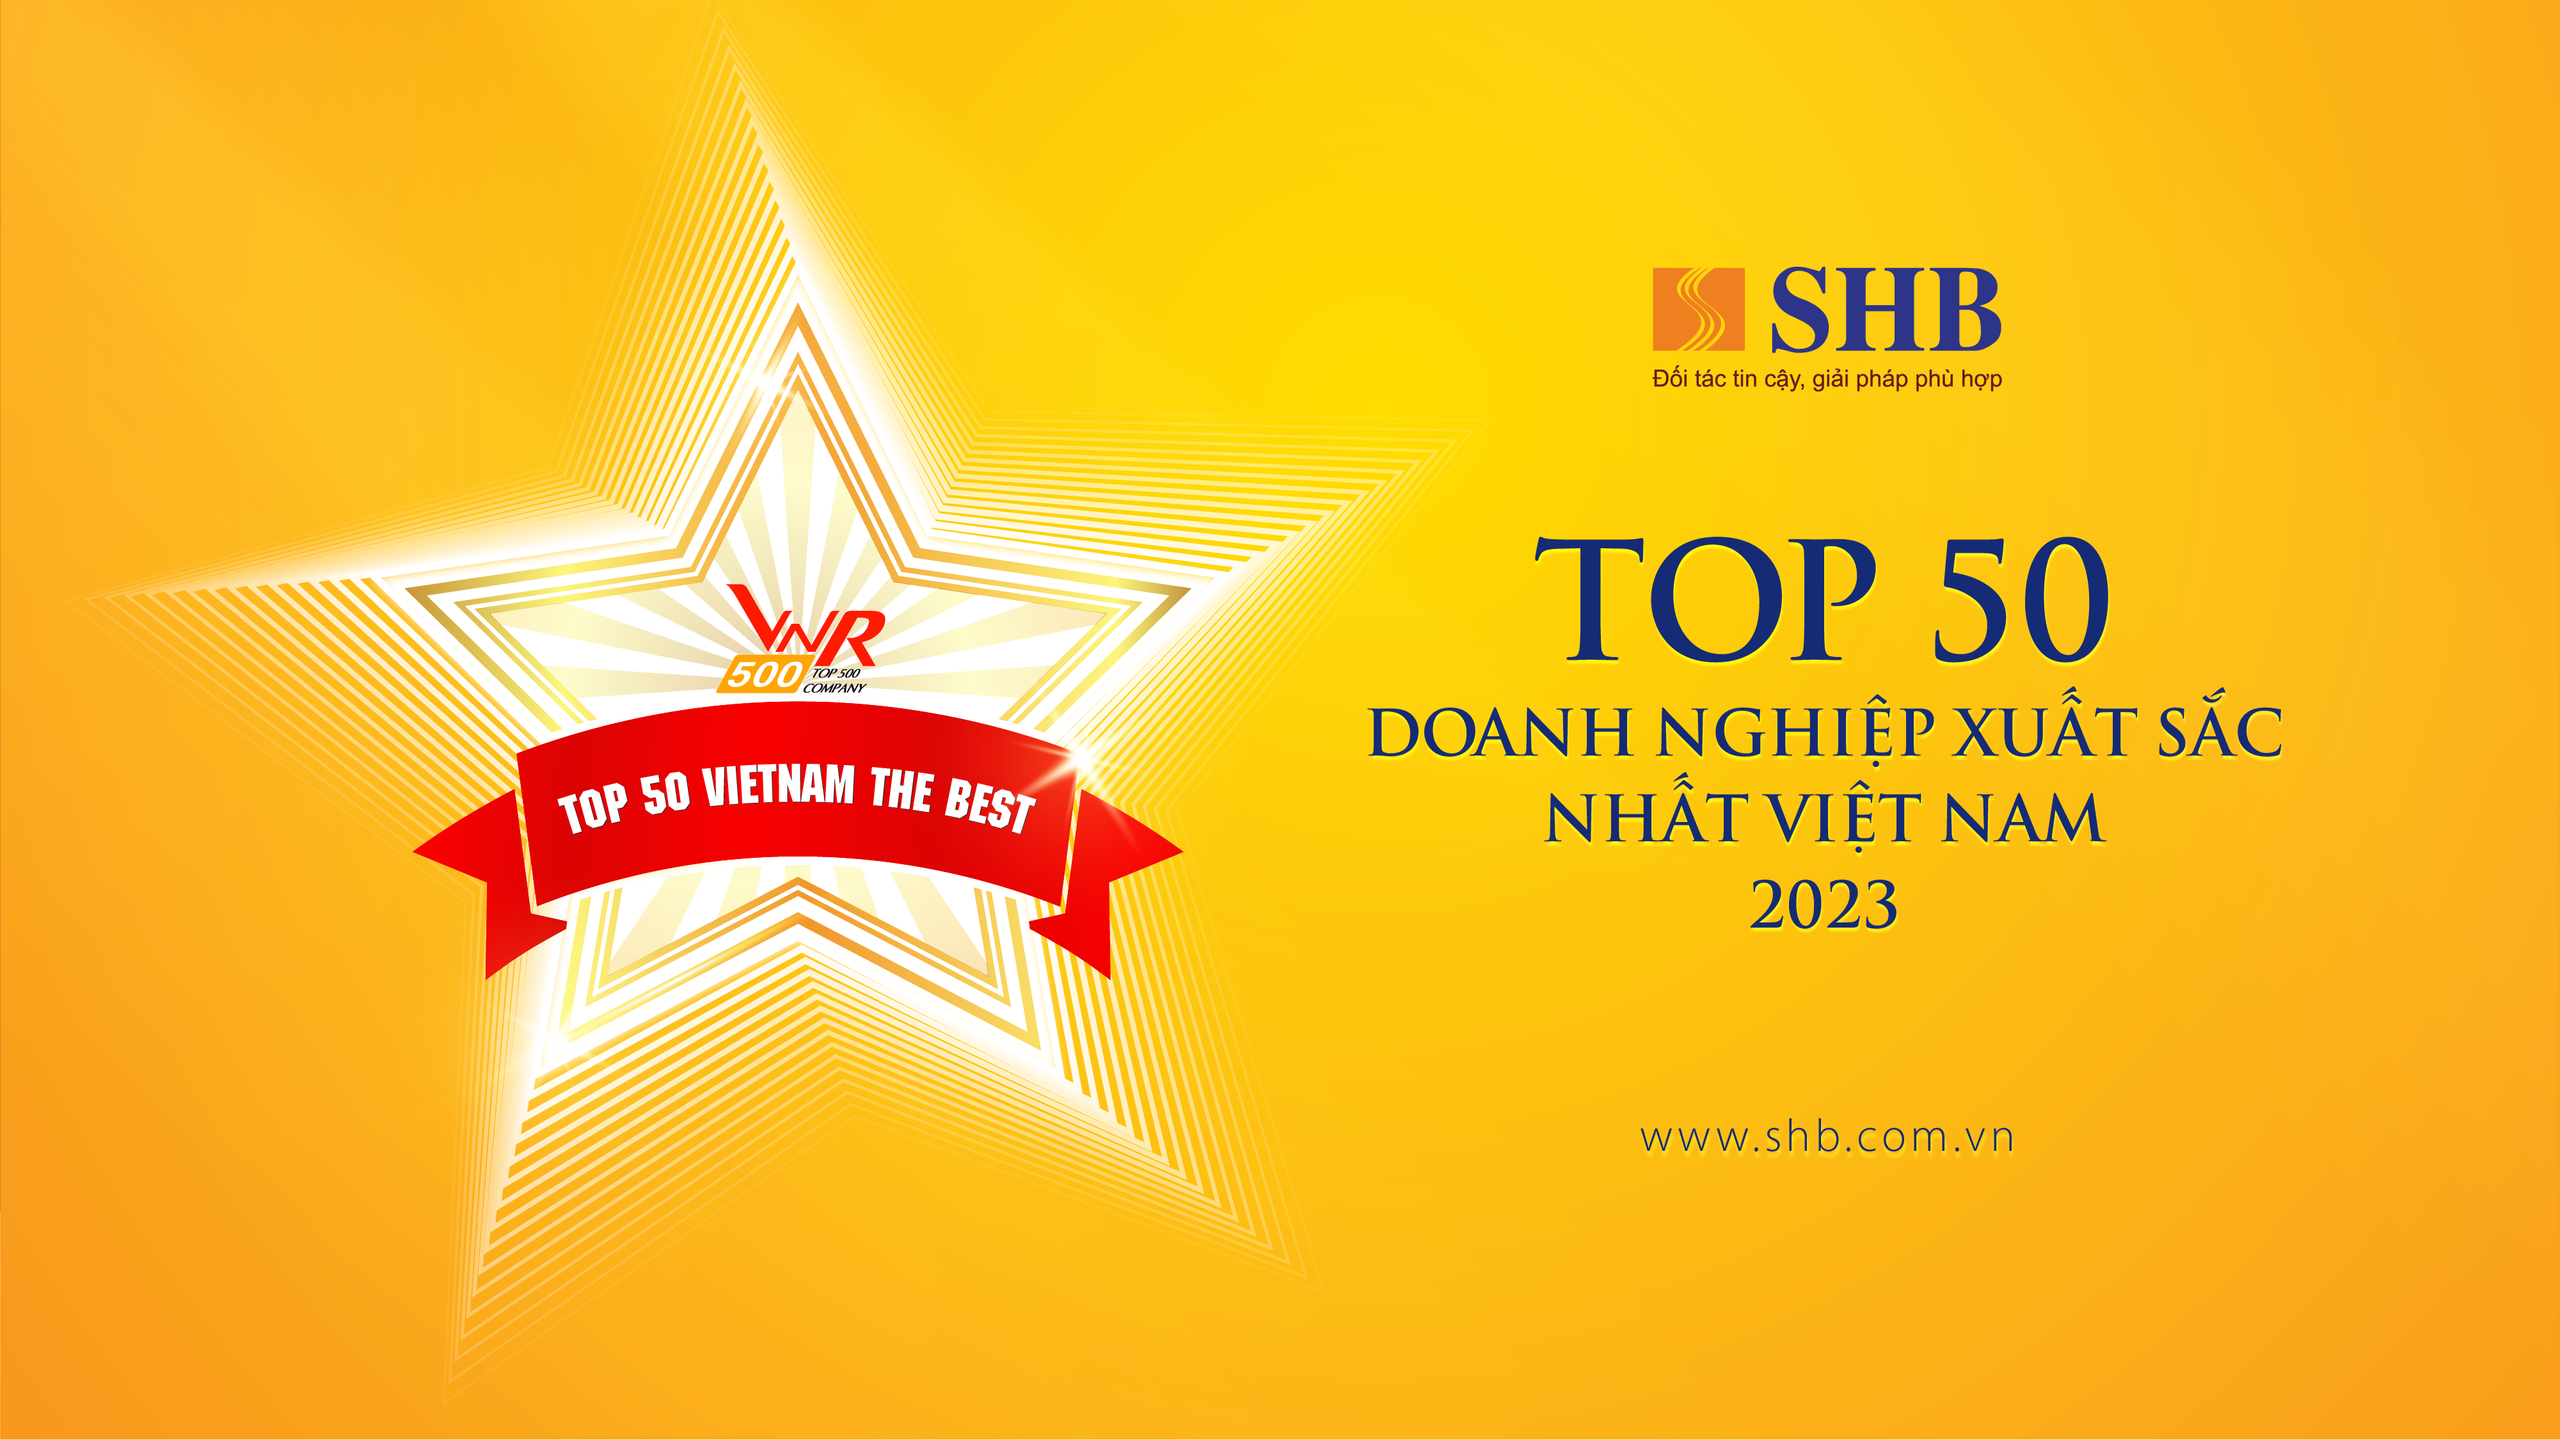 SHB 5 năm liên tiếp được vinh danh “Top 50 doanh nghiệp xuất sắc nhất Việt Nam”- Ảnh 2.